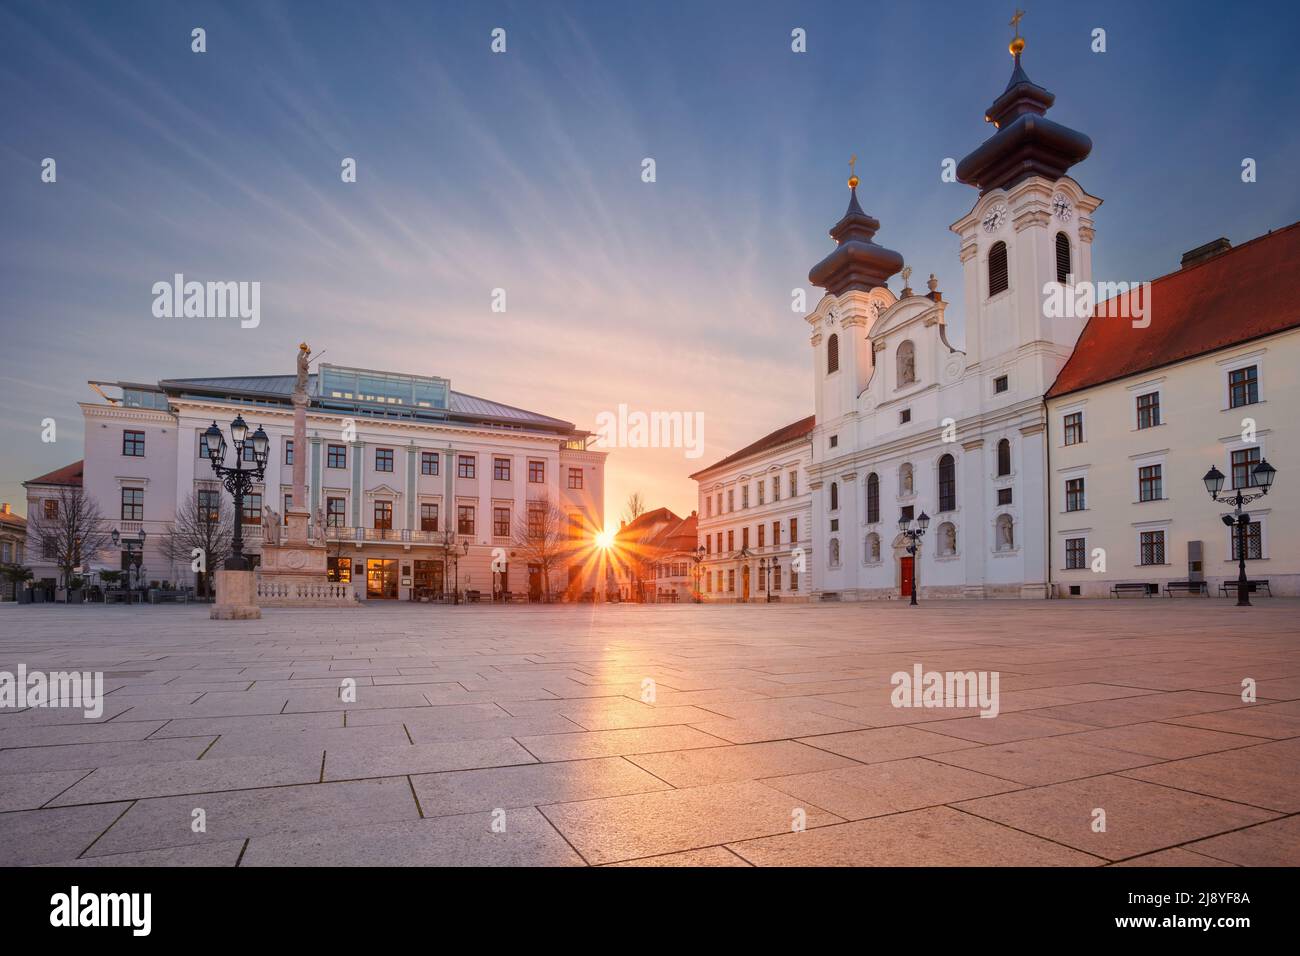 Gyor, Hongrie. Image de paysage urbain du centre-ville de Gyor, Hongrie avec la place Szechenyi au lever du soleil. Banque D'Images